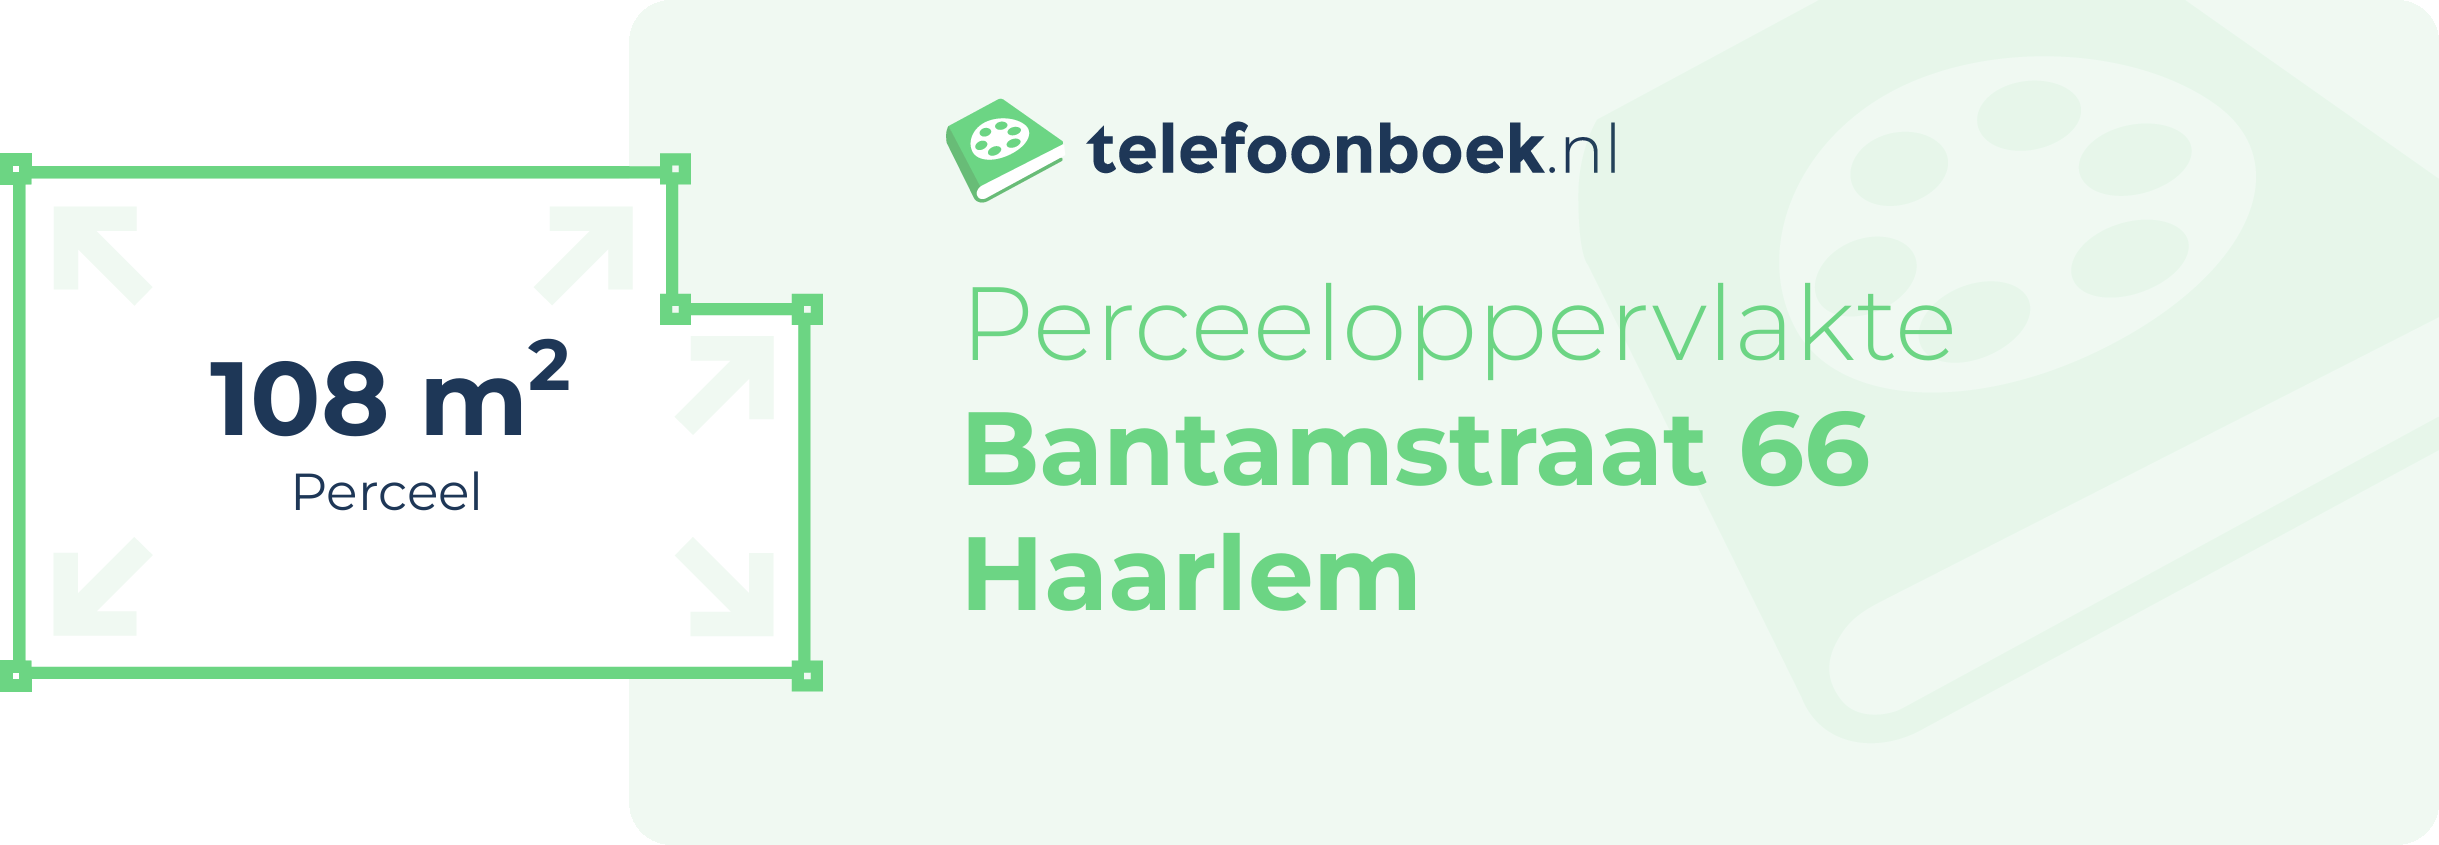 Perceeloppervlakte Bantamstraat 66 Haarlem